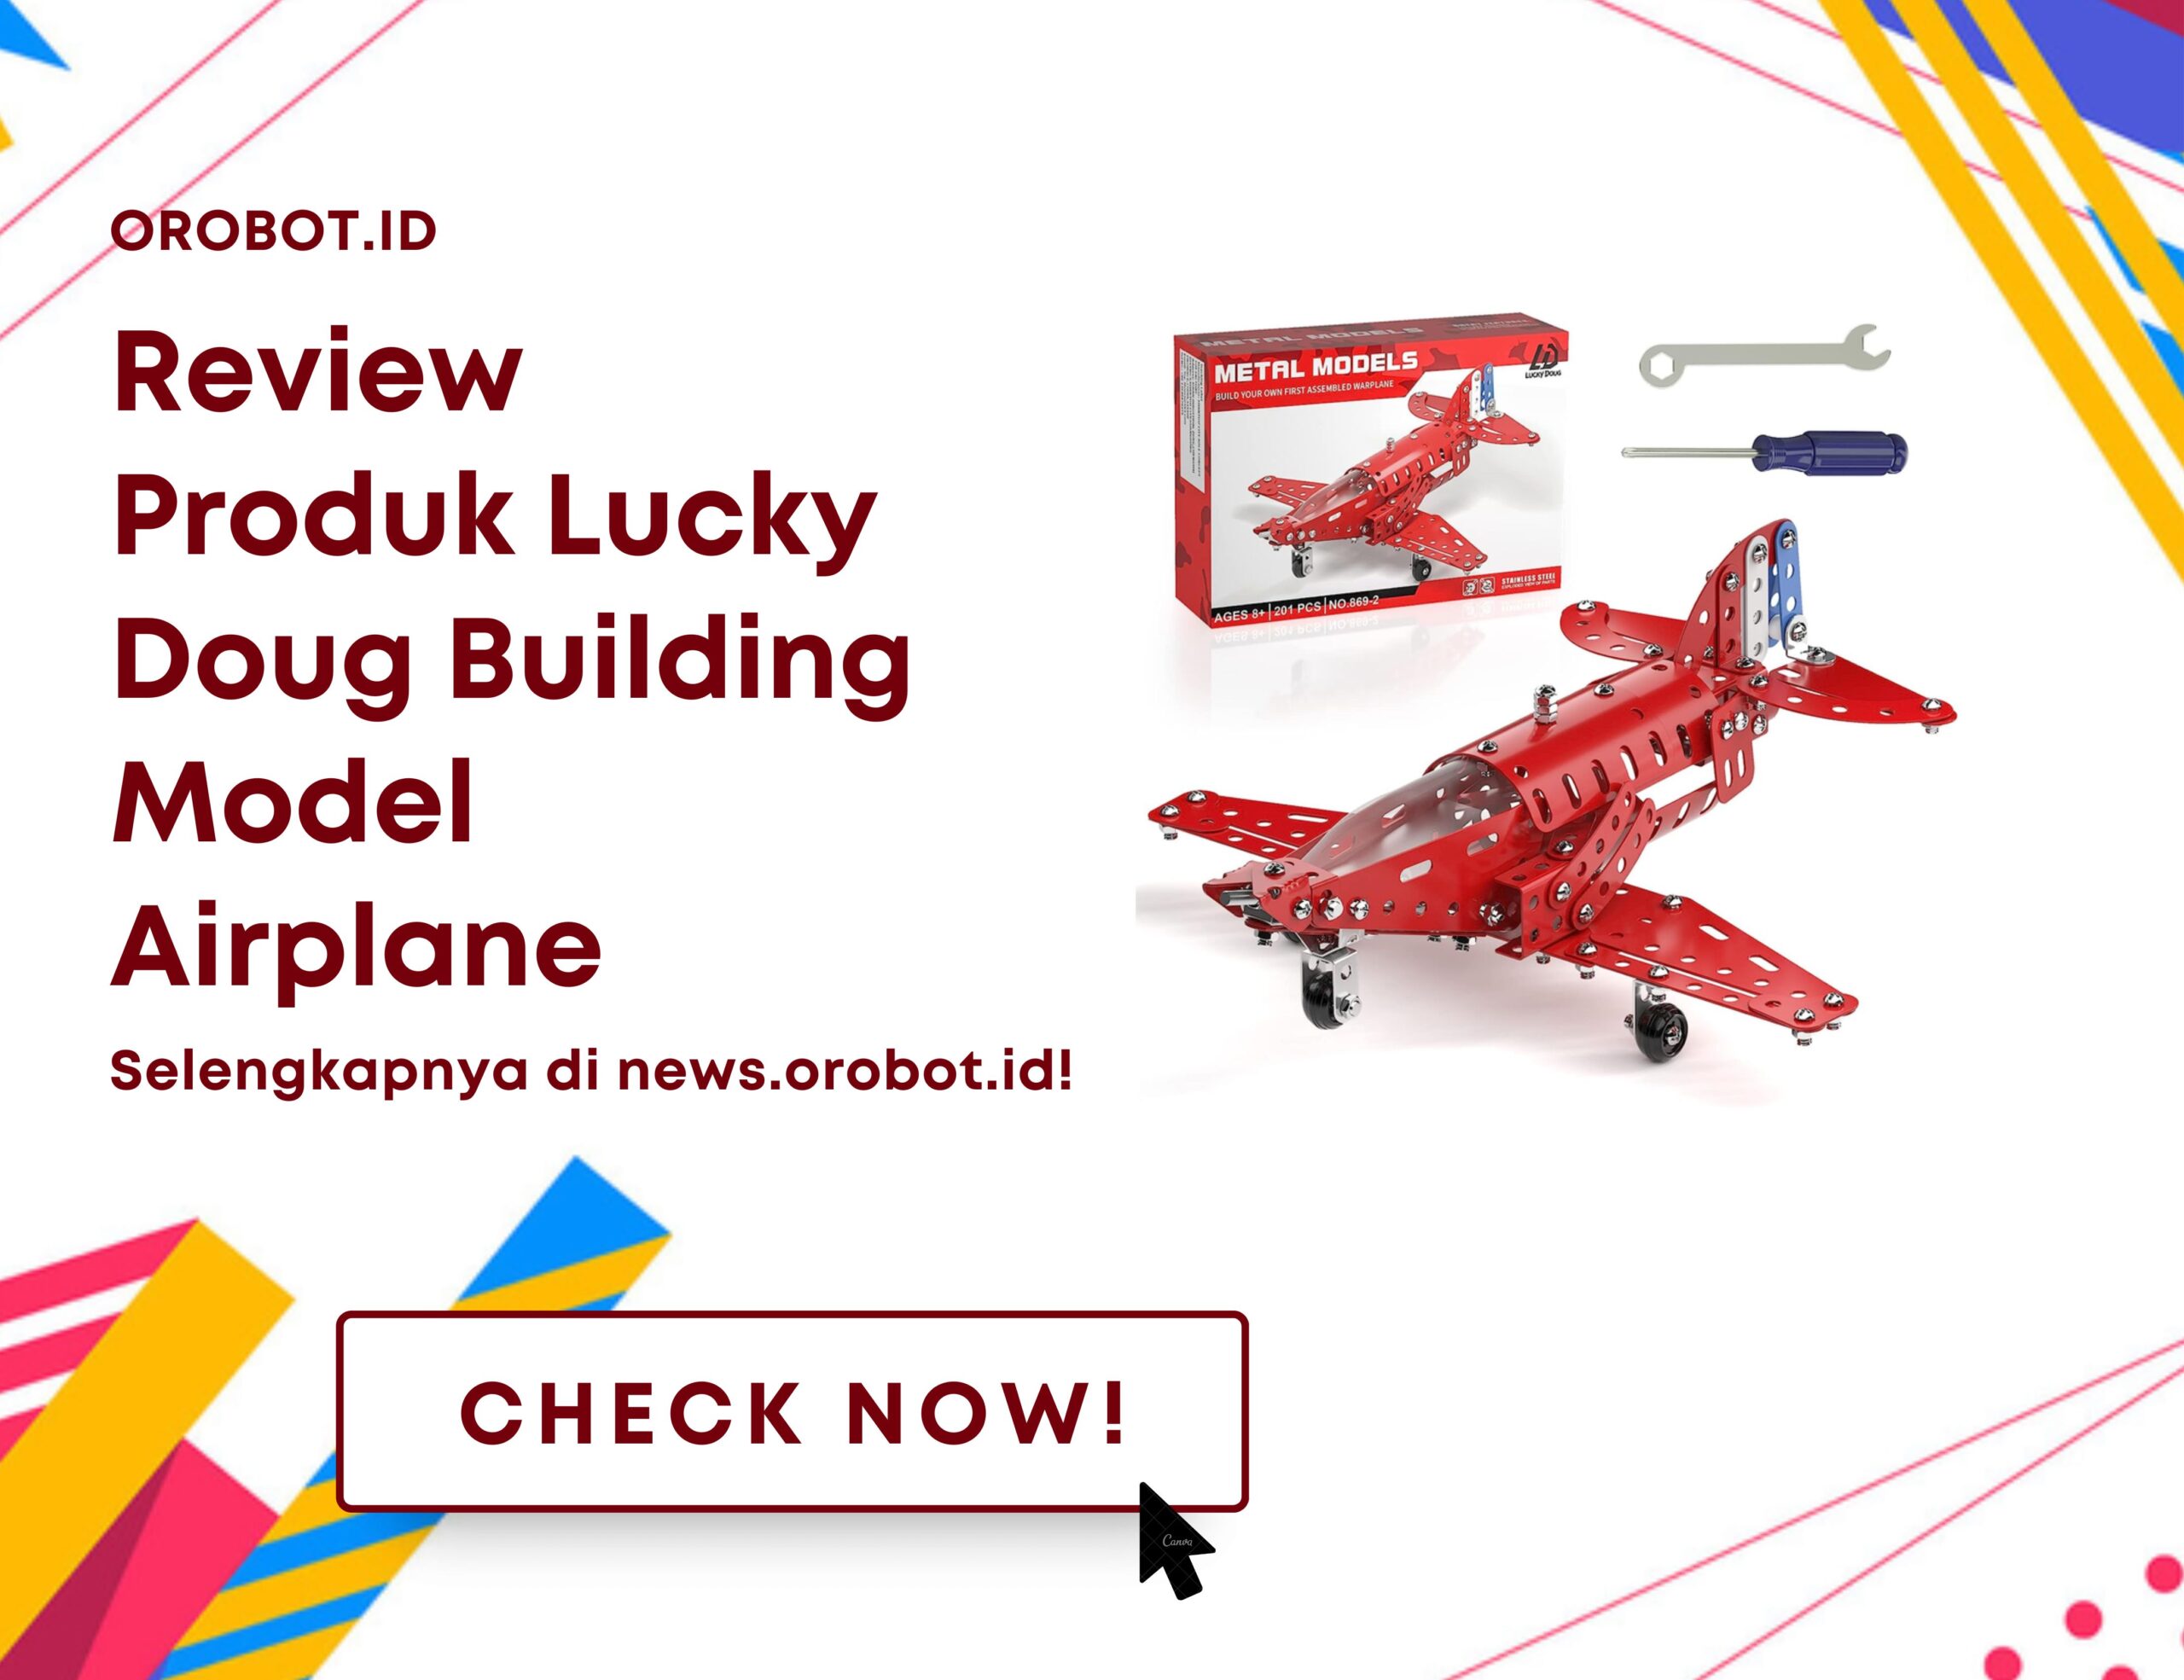 Review Lucky Doug Building Model Airplane, Mainan Konstruksi Edukatif yang Menginspirasi Kreativitas